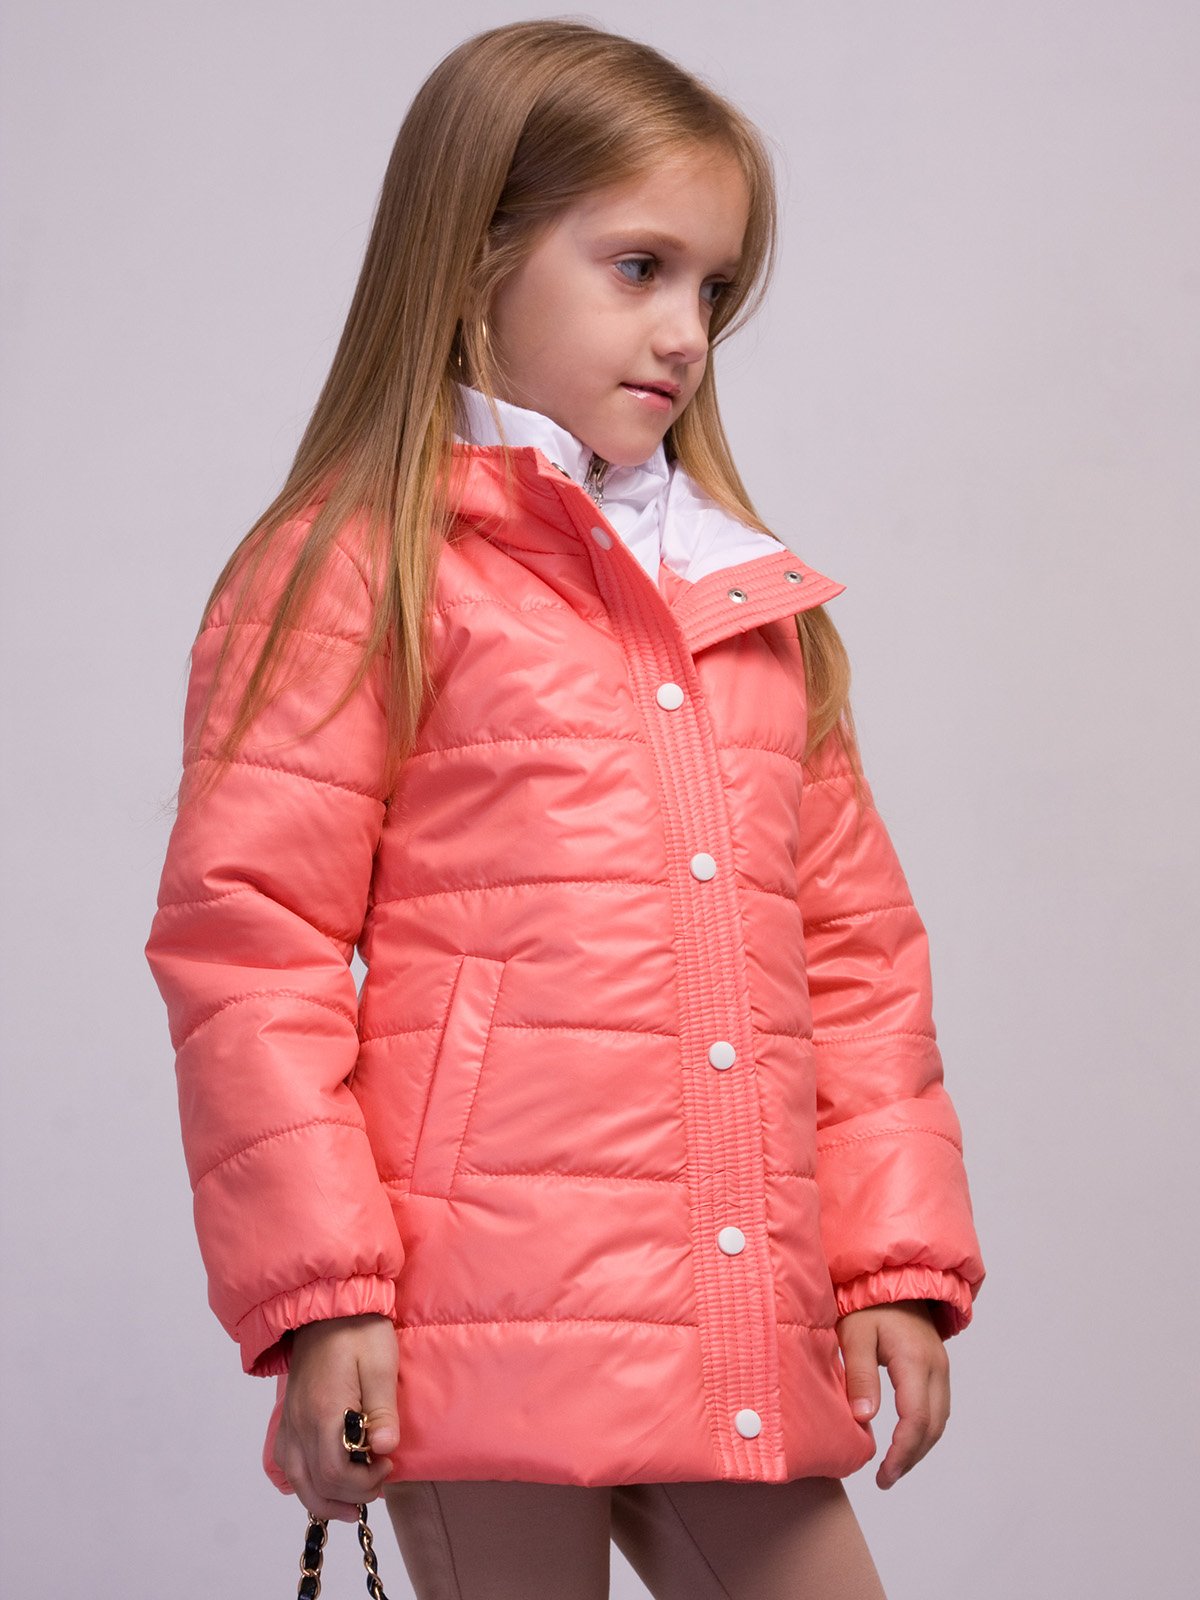 Куртка девушки розовая. Arista деми куртка для девочки. Куртка демисезонная девочка. Девочка в розовой куртке. Куртка детская демисезонная девочке.